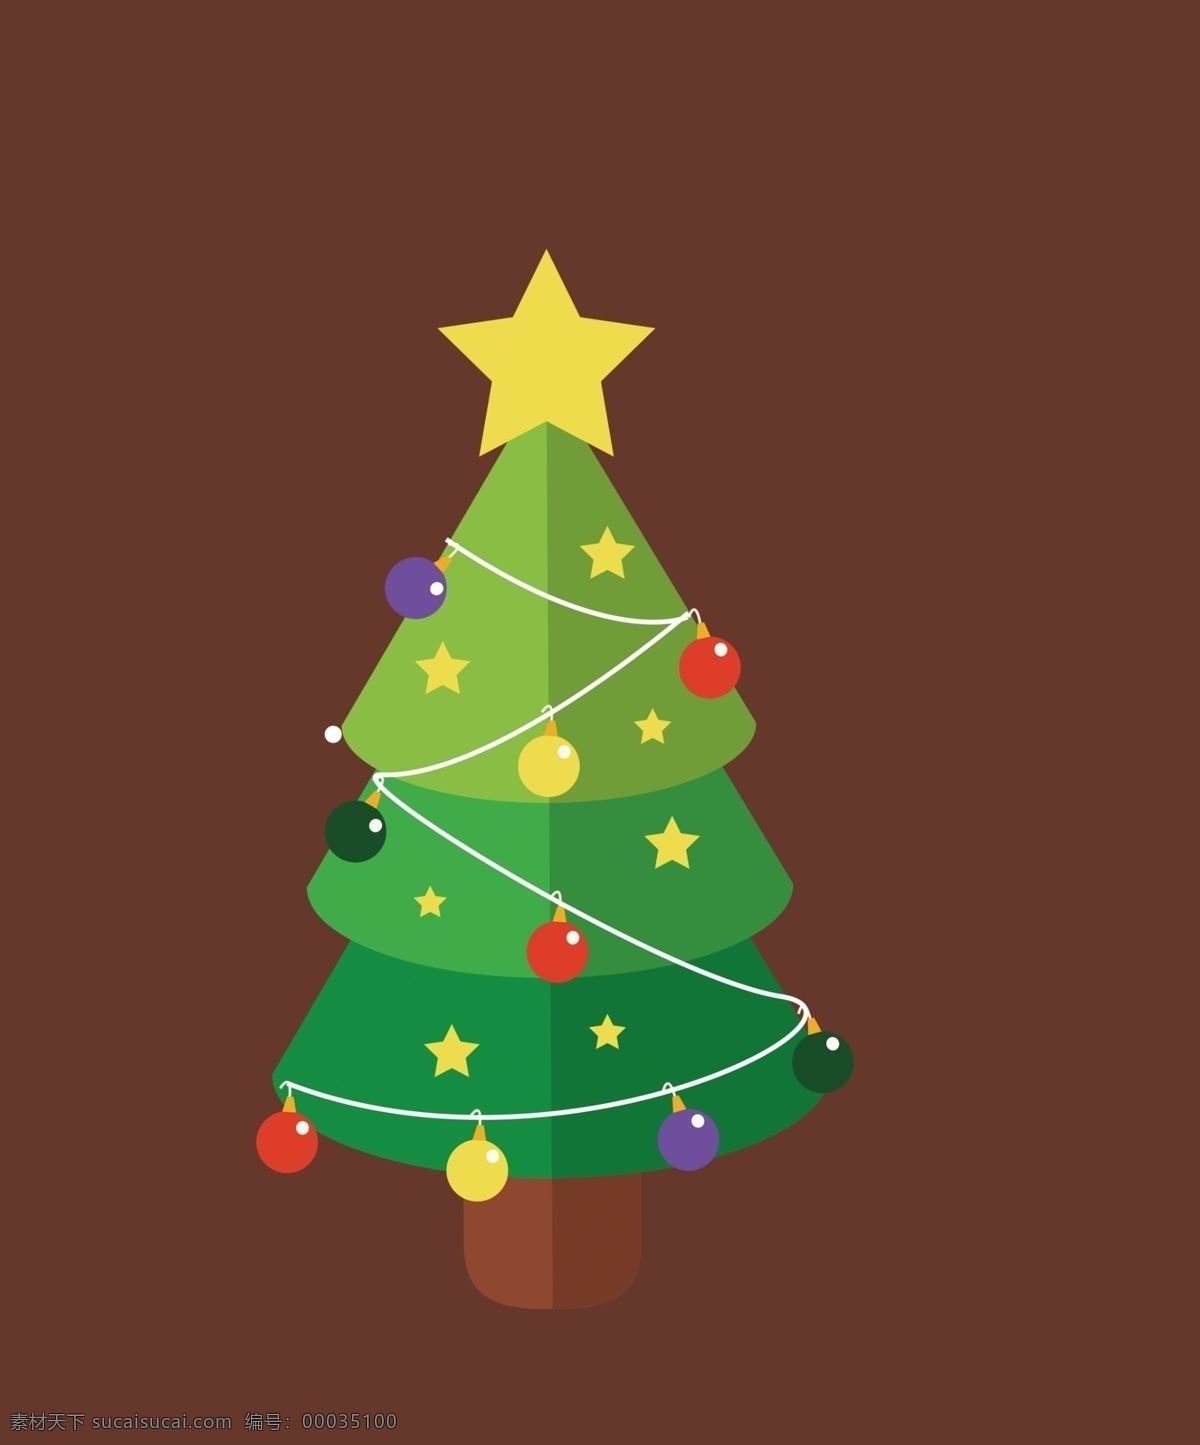 圣诞树psd 圣诞树 圣诞 树 装饰 圣诞节 透明装饰 png素材 标志图标 其他图标 分层